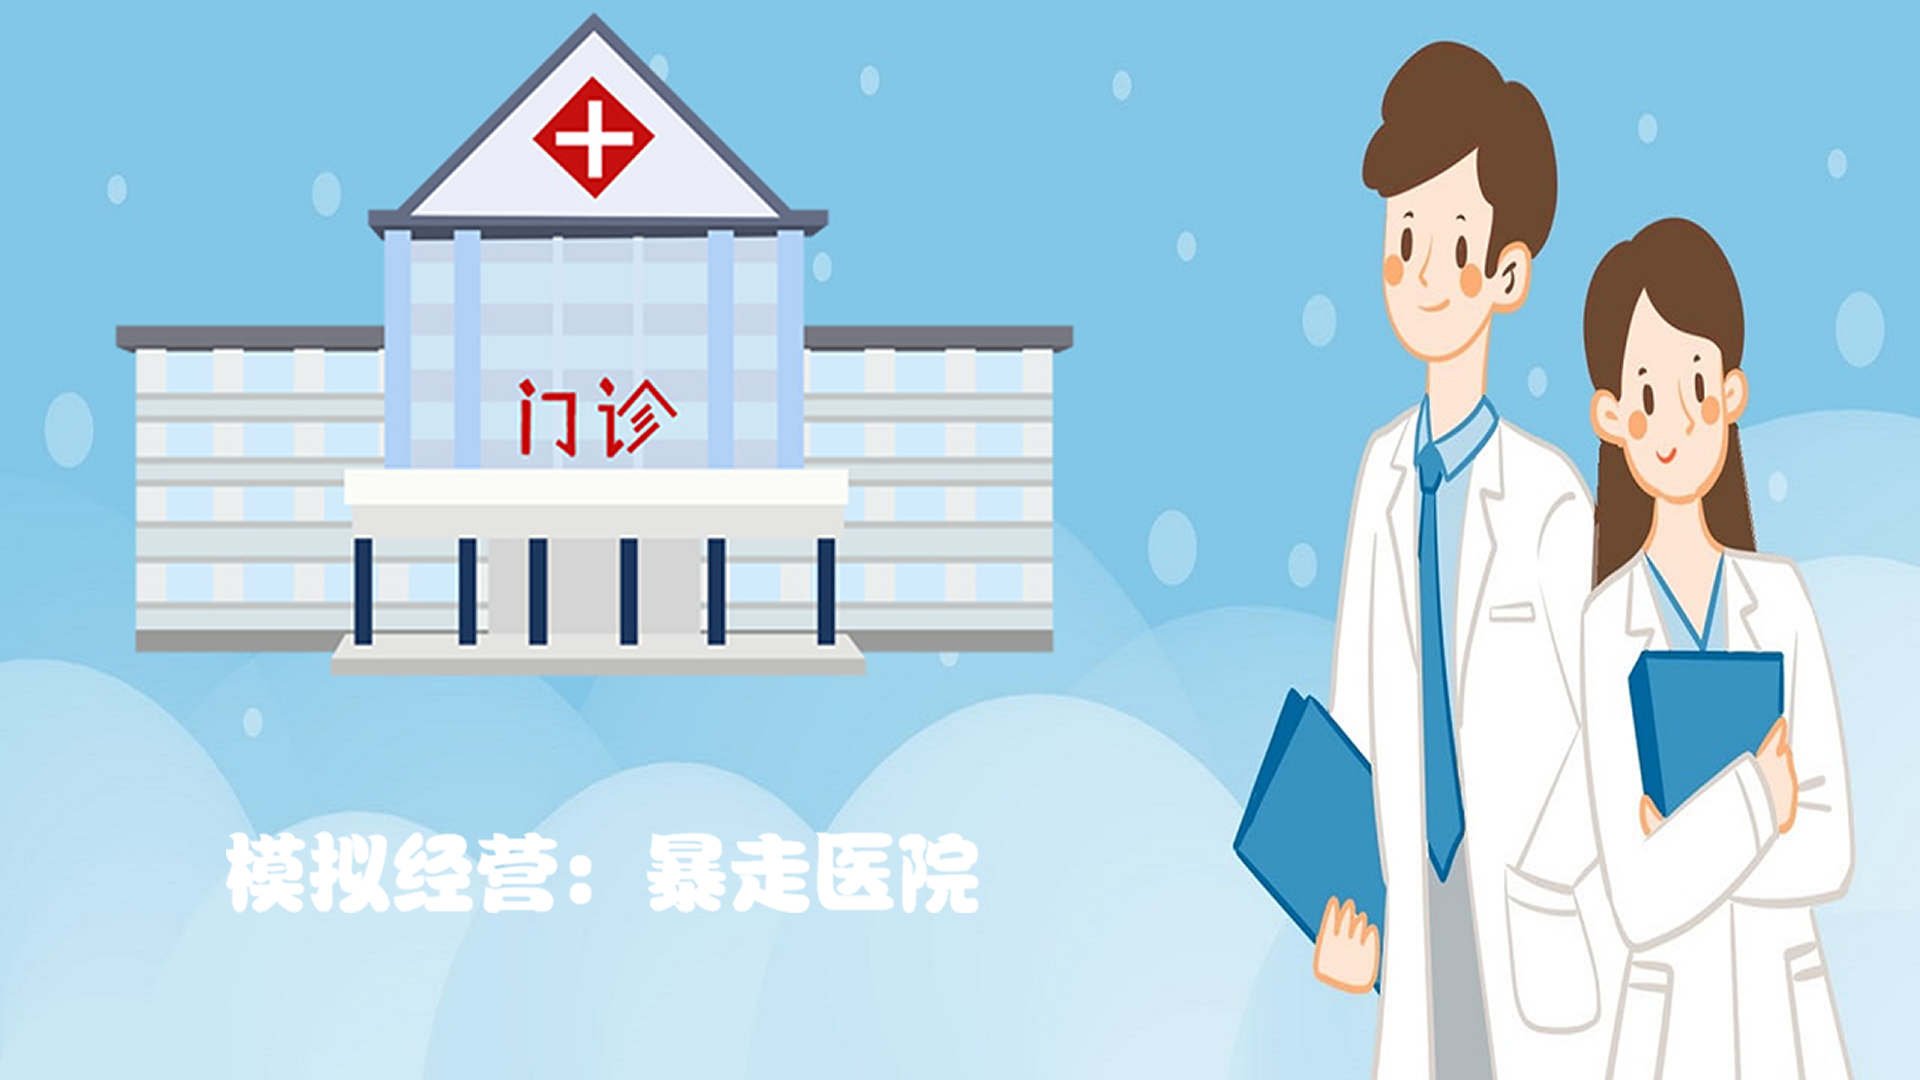 Banner of 模擬經營：暴走醫院 